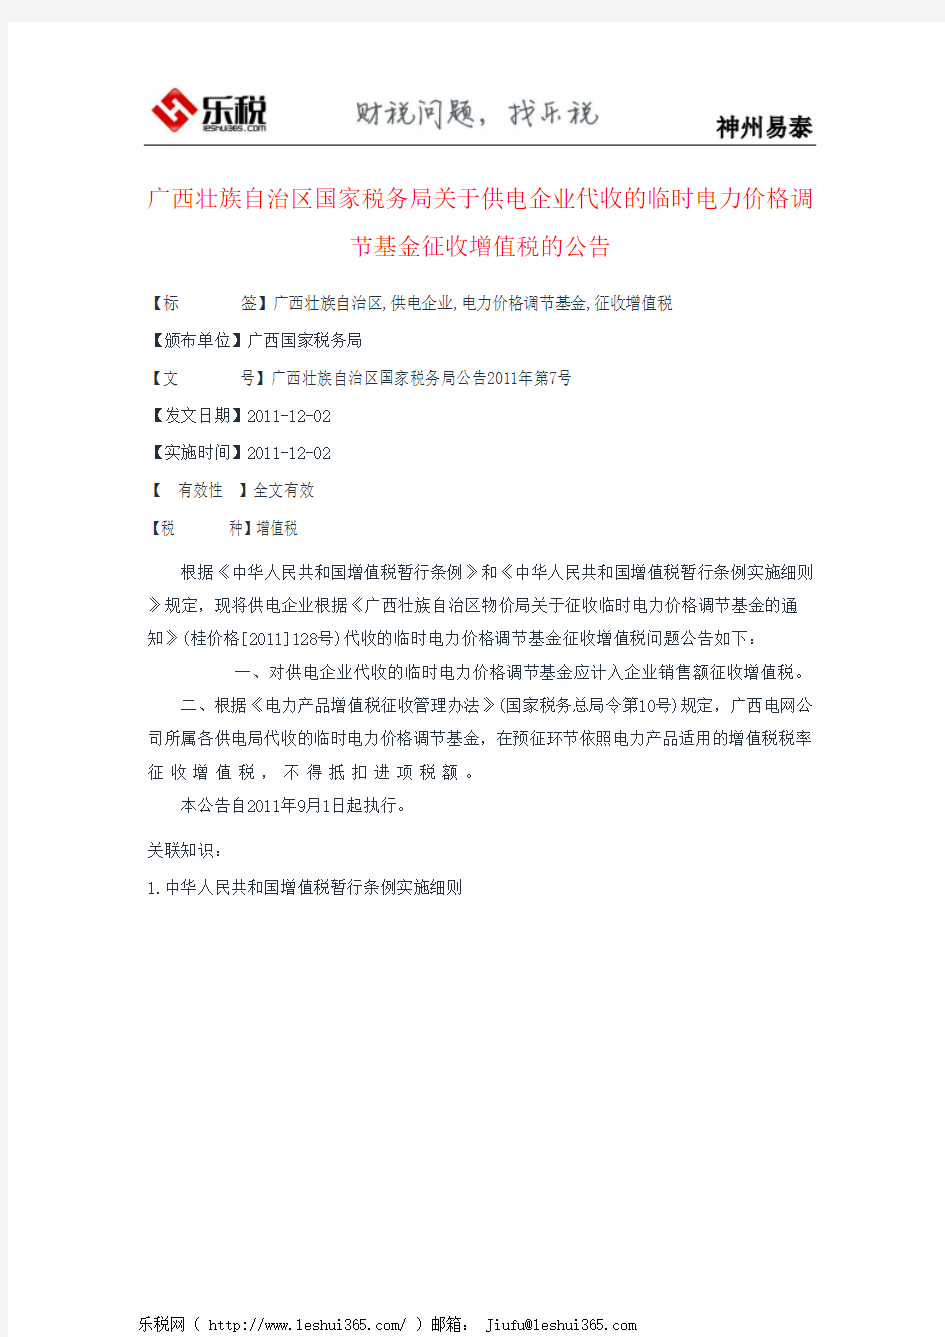 广西壮族自治区国家税务局关于供电企业代收的临时电力价格调节基